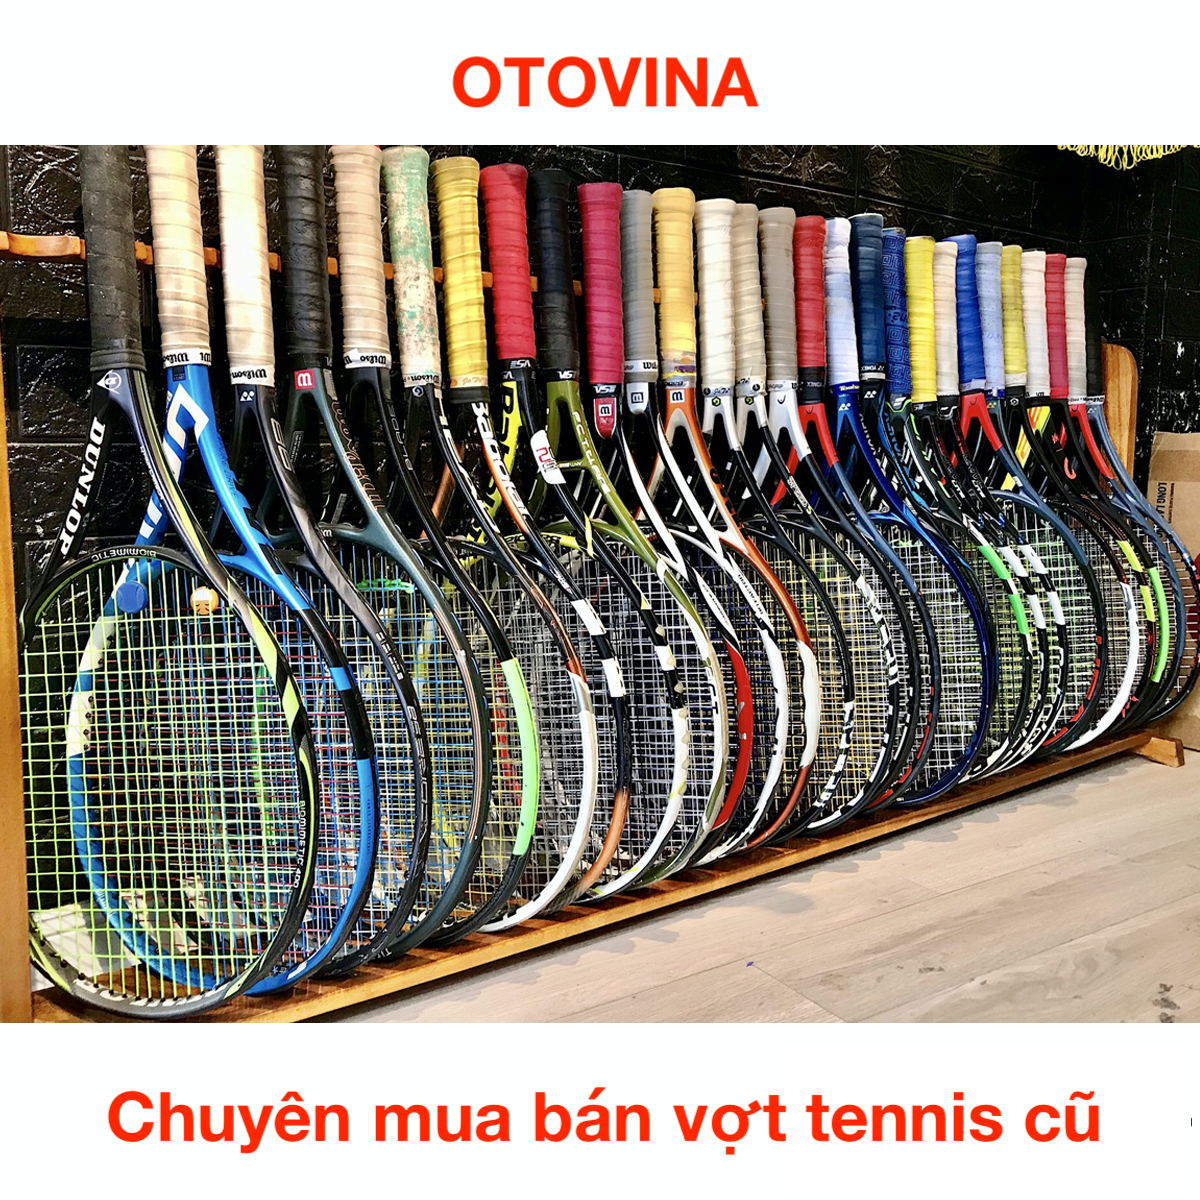 OtoVina Tennis - Địa chỉ chuyên mua bán vợt Tennis cũ uy tín nhất hiện nay